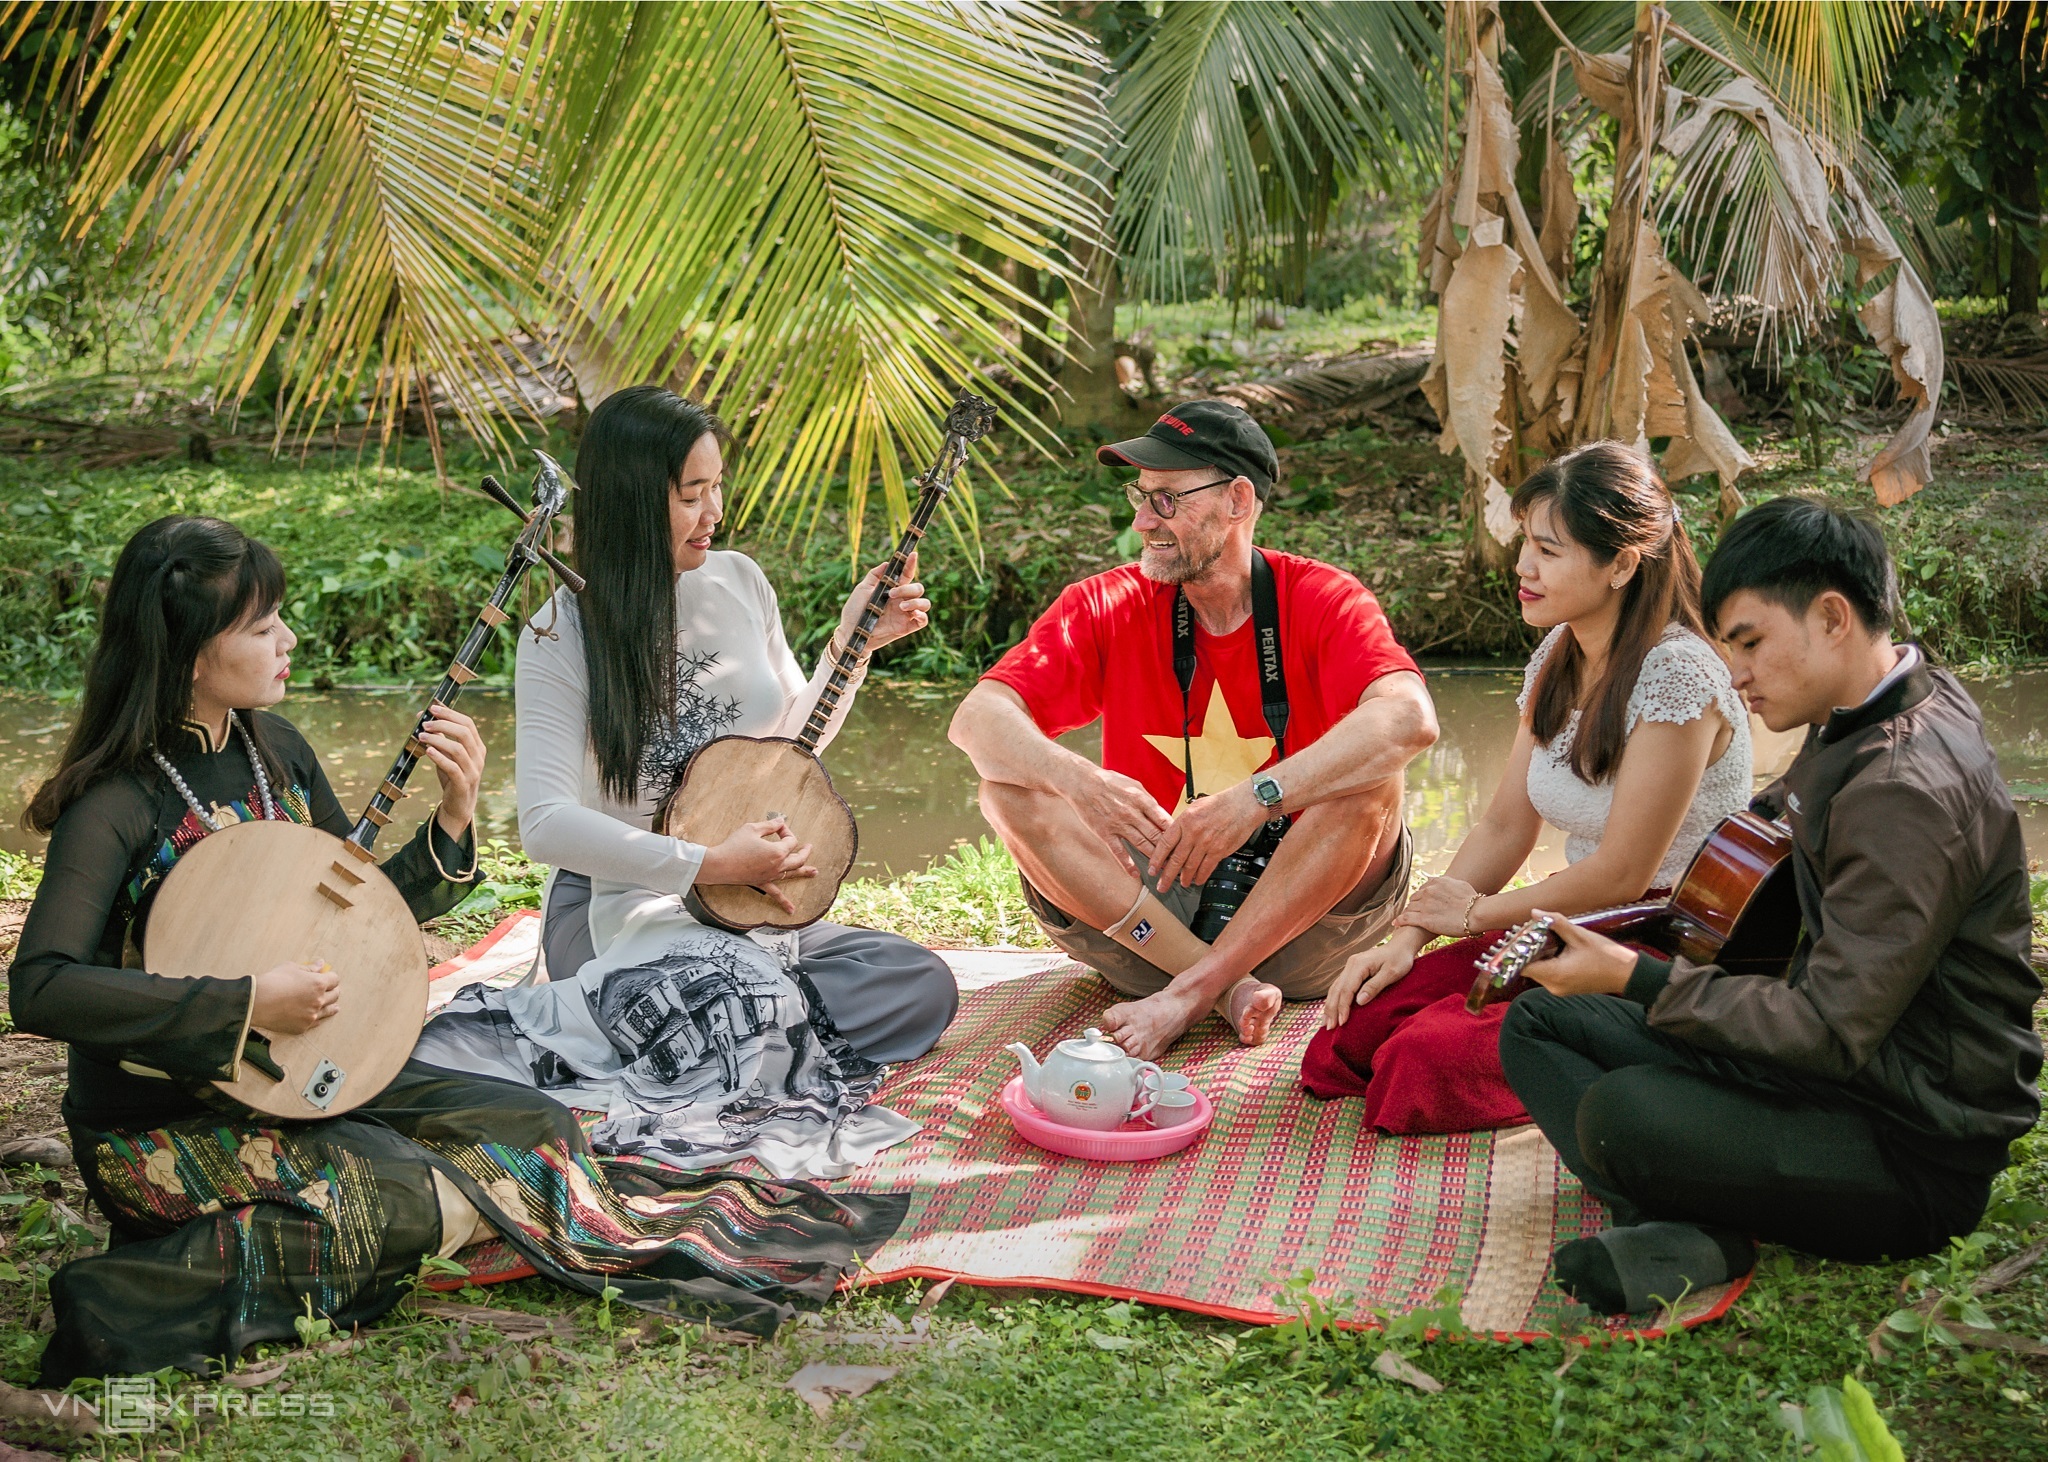 Туристы могут насладиться don ca tai tu (южной народной музыкой), уникальным обычаем дельты Меконга, редко встречающимся в других частях Вьетнама.